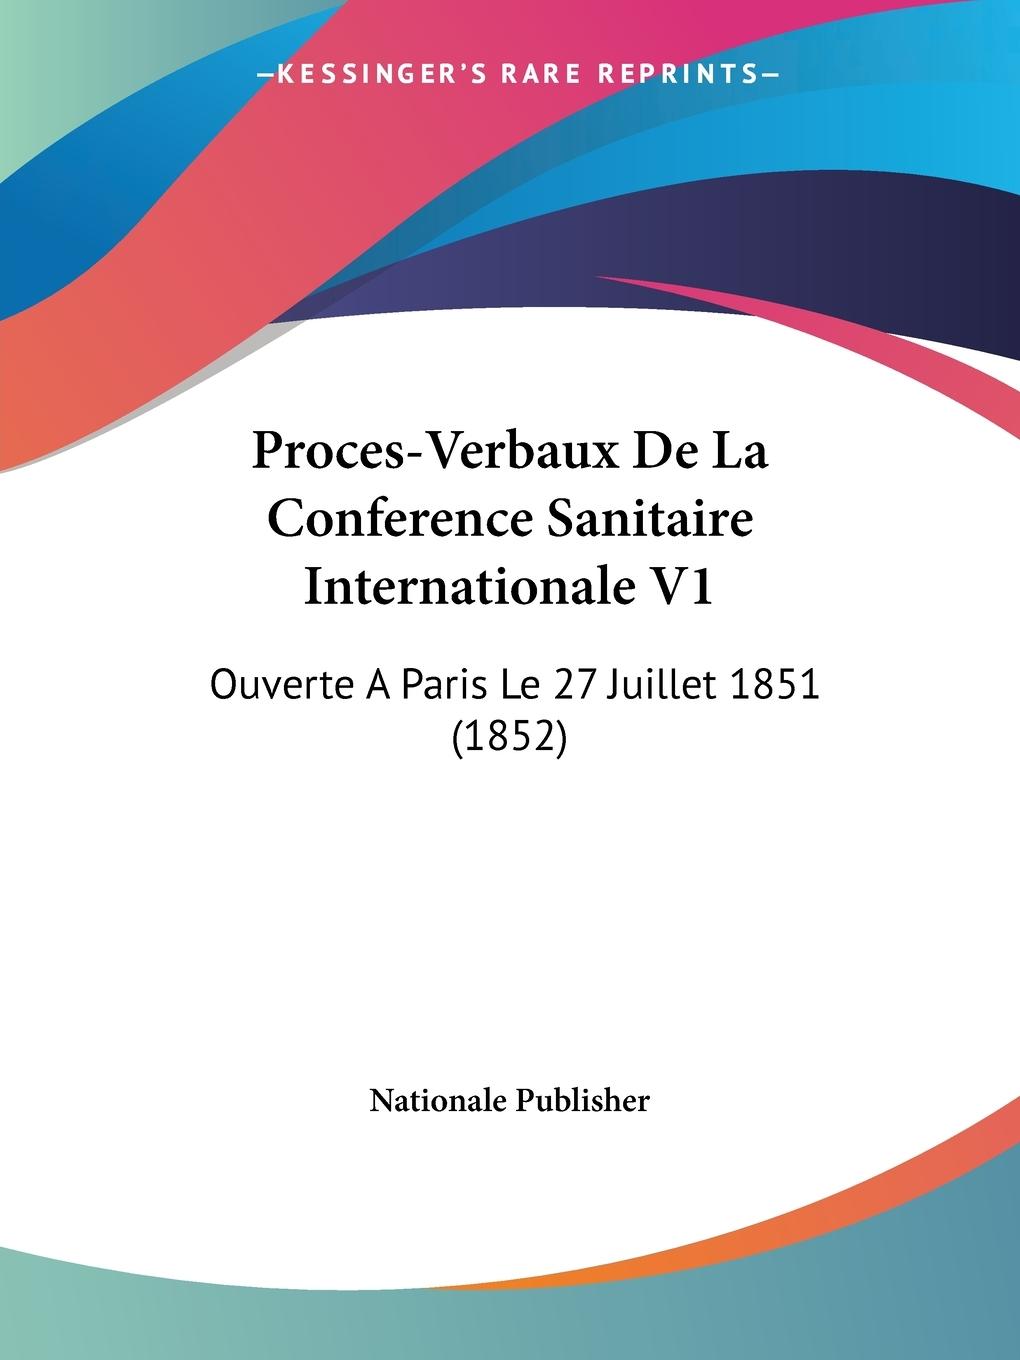 Proces-Verbaux De La Conference Sanitaire Internationale V1 - Nationale Publisher